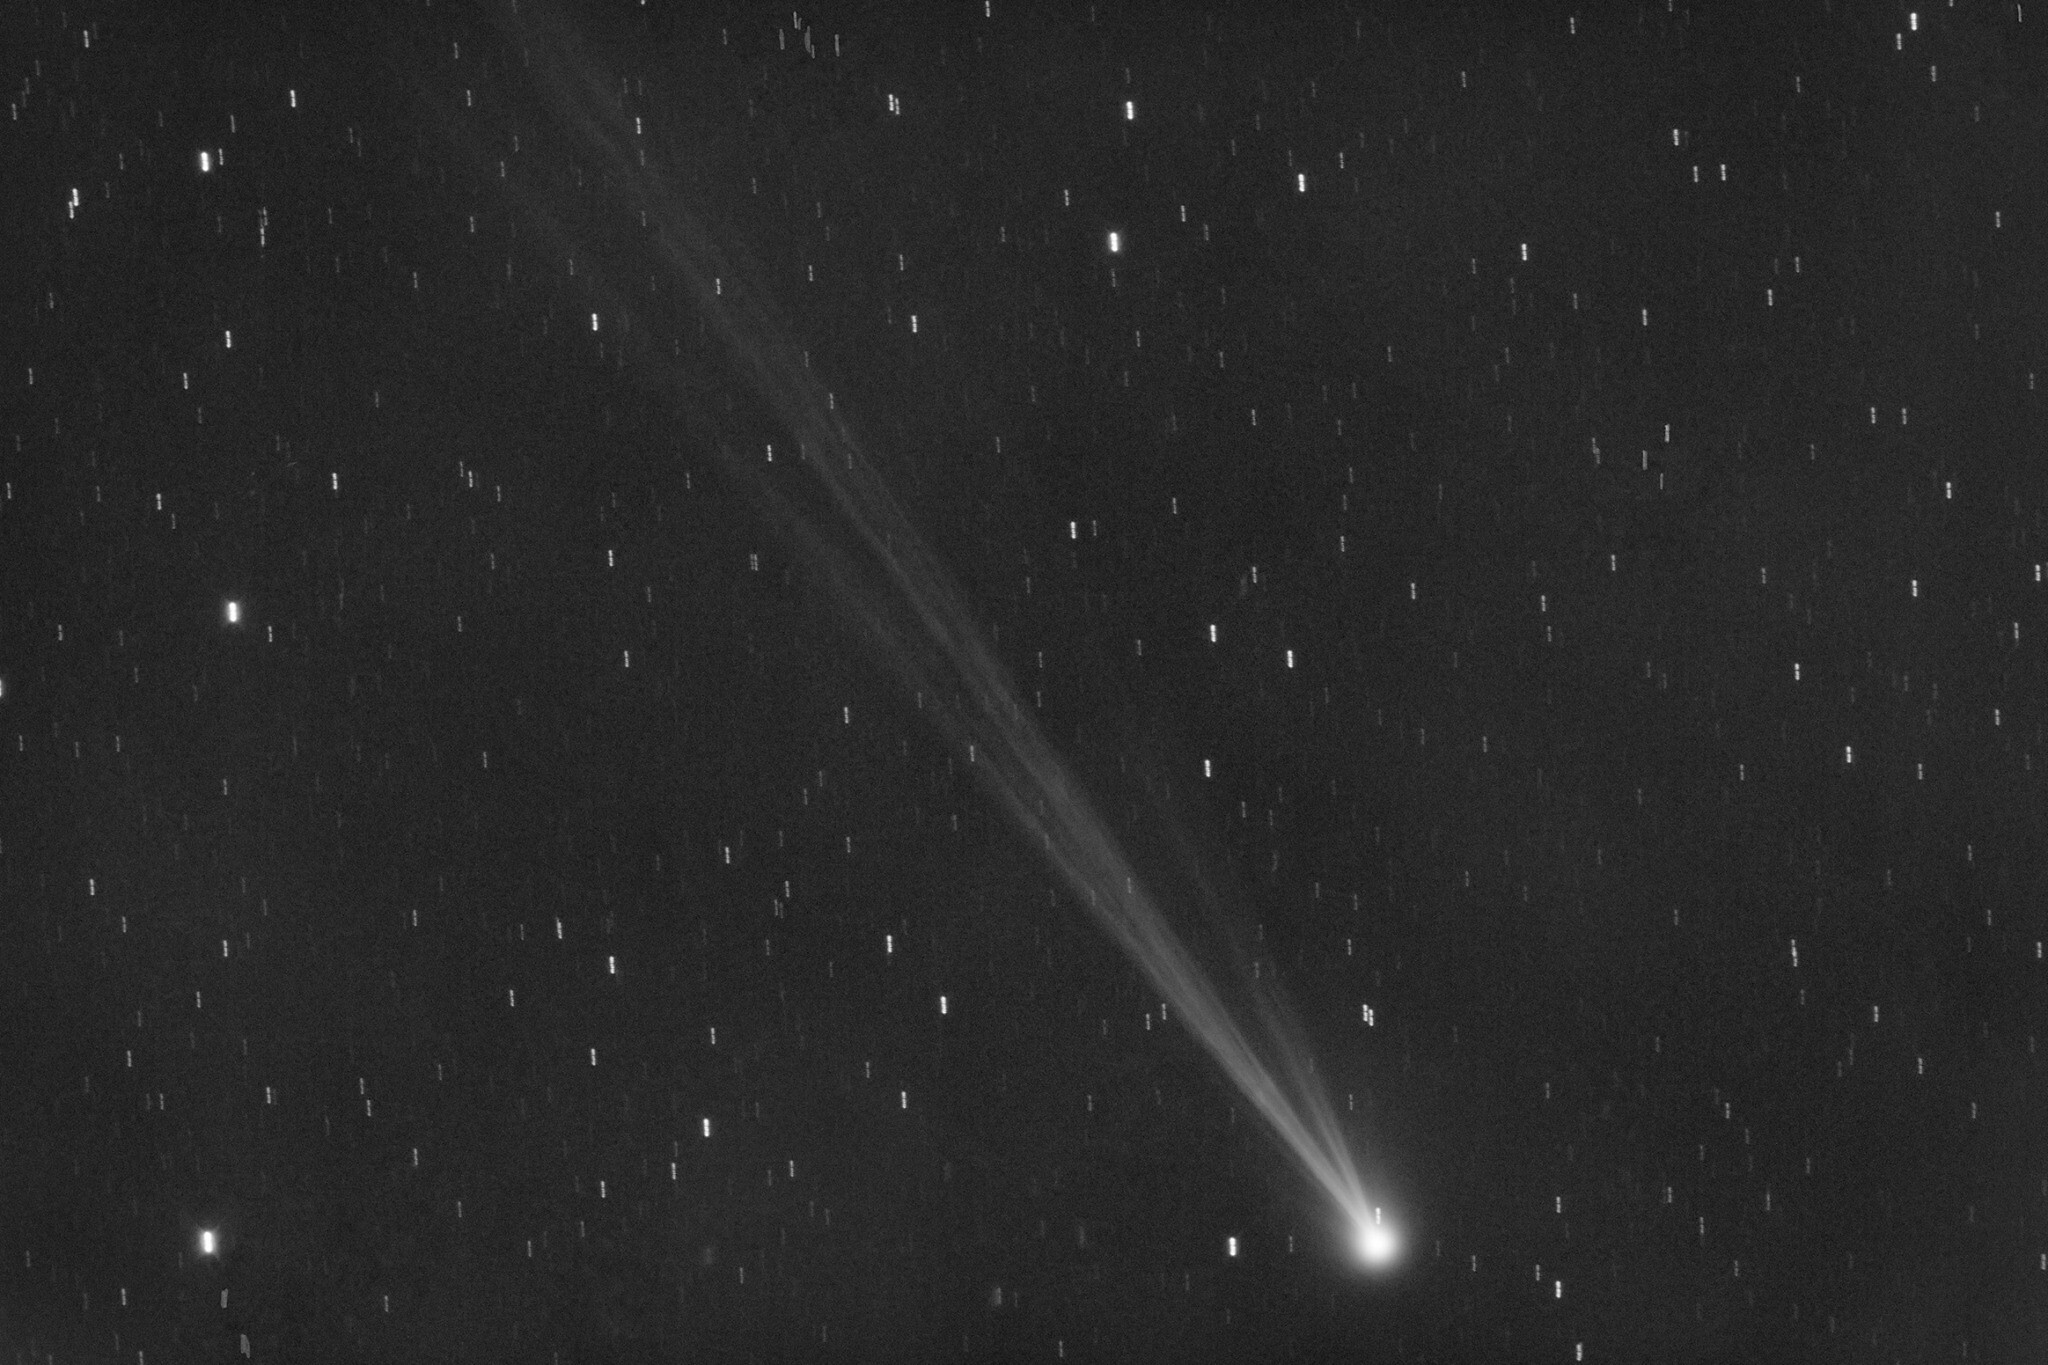 Comet Update!